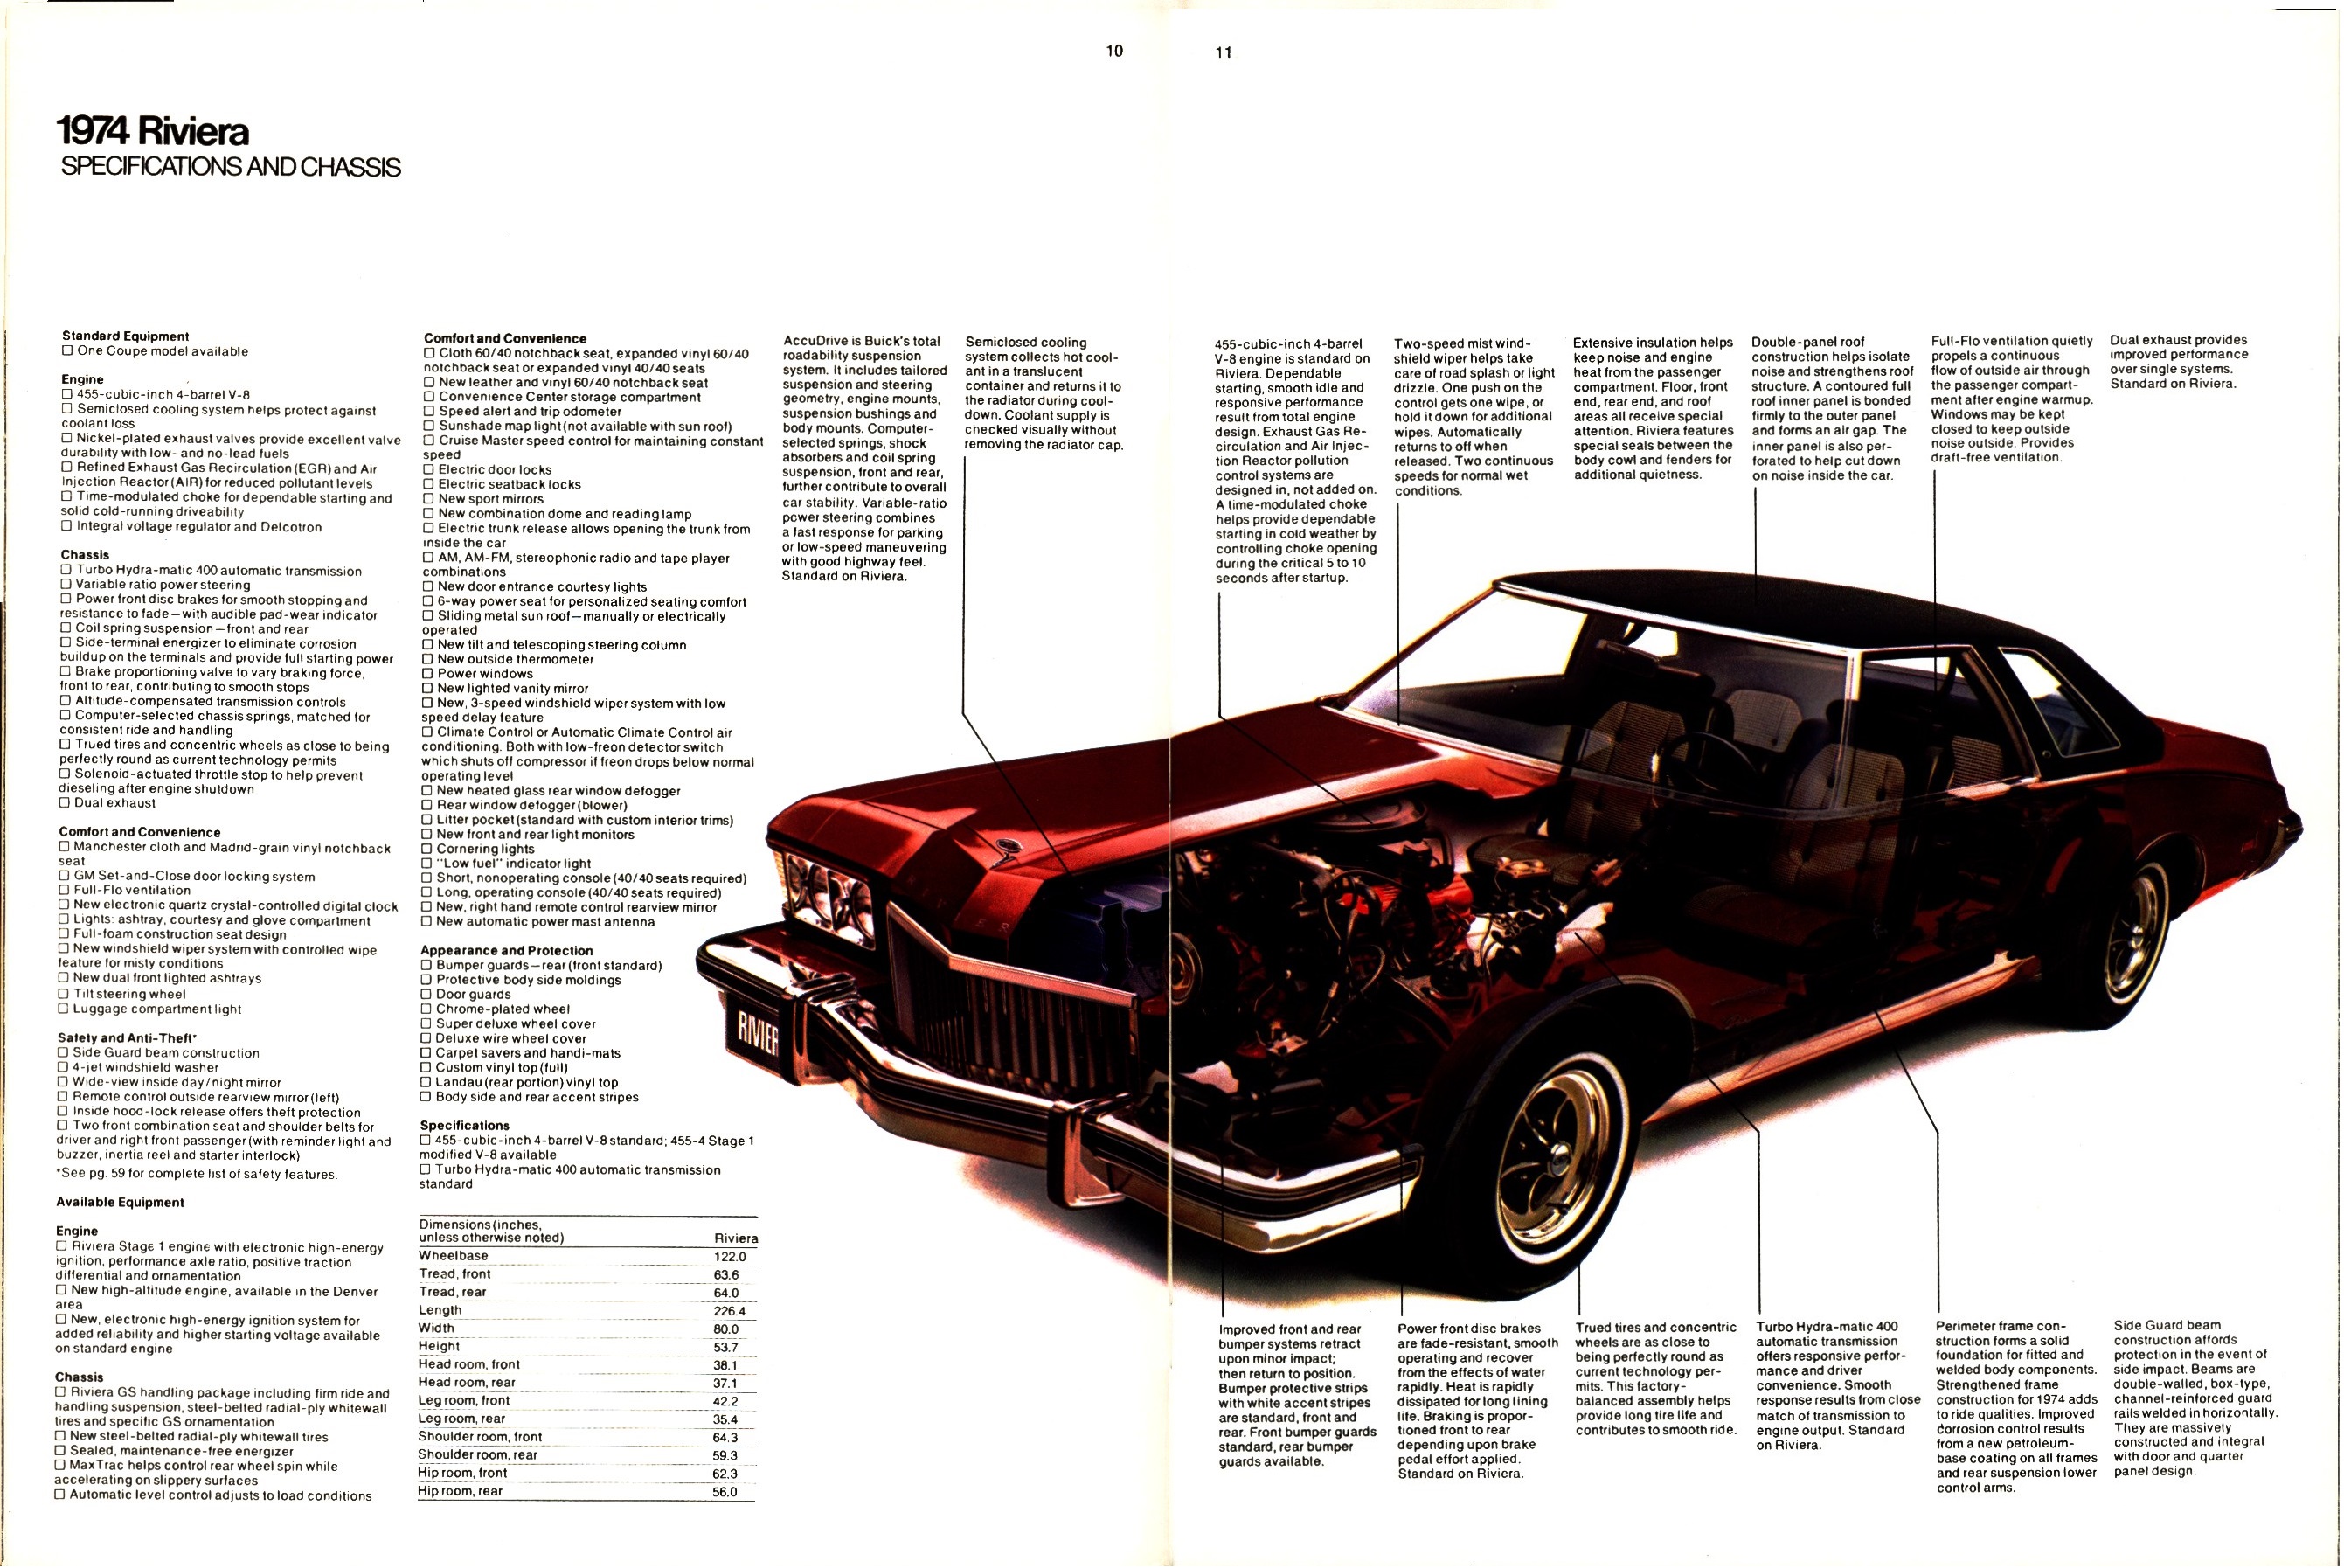 1974 Buick 10-11